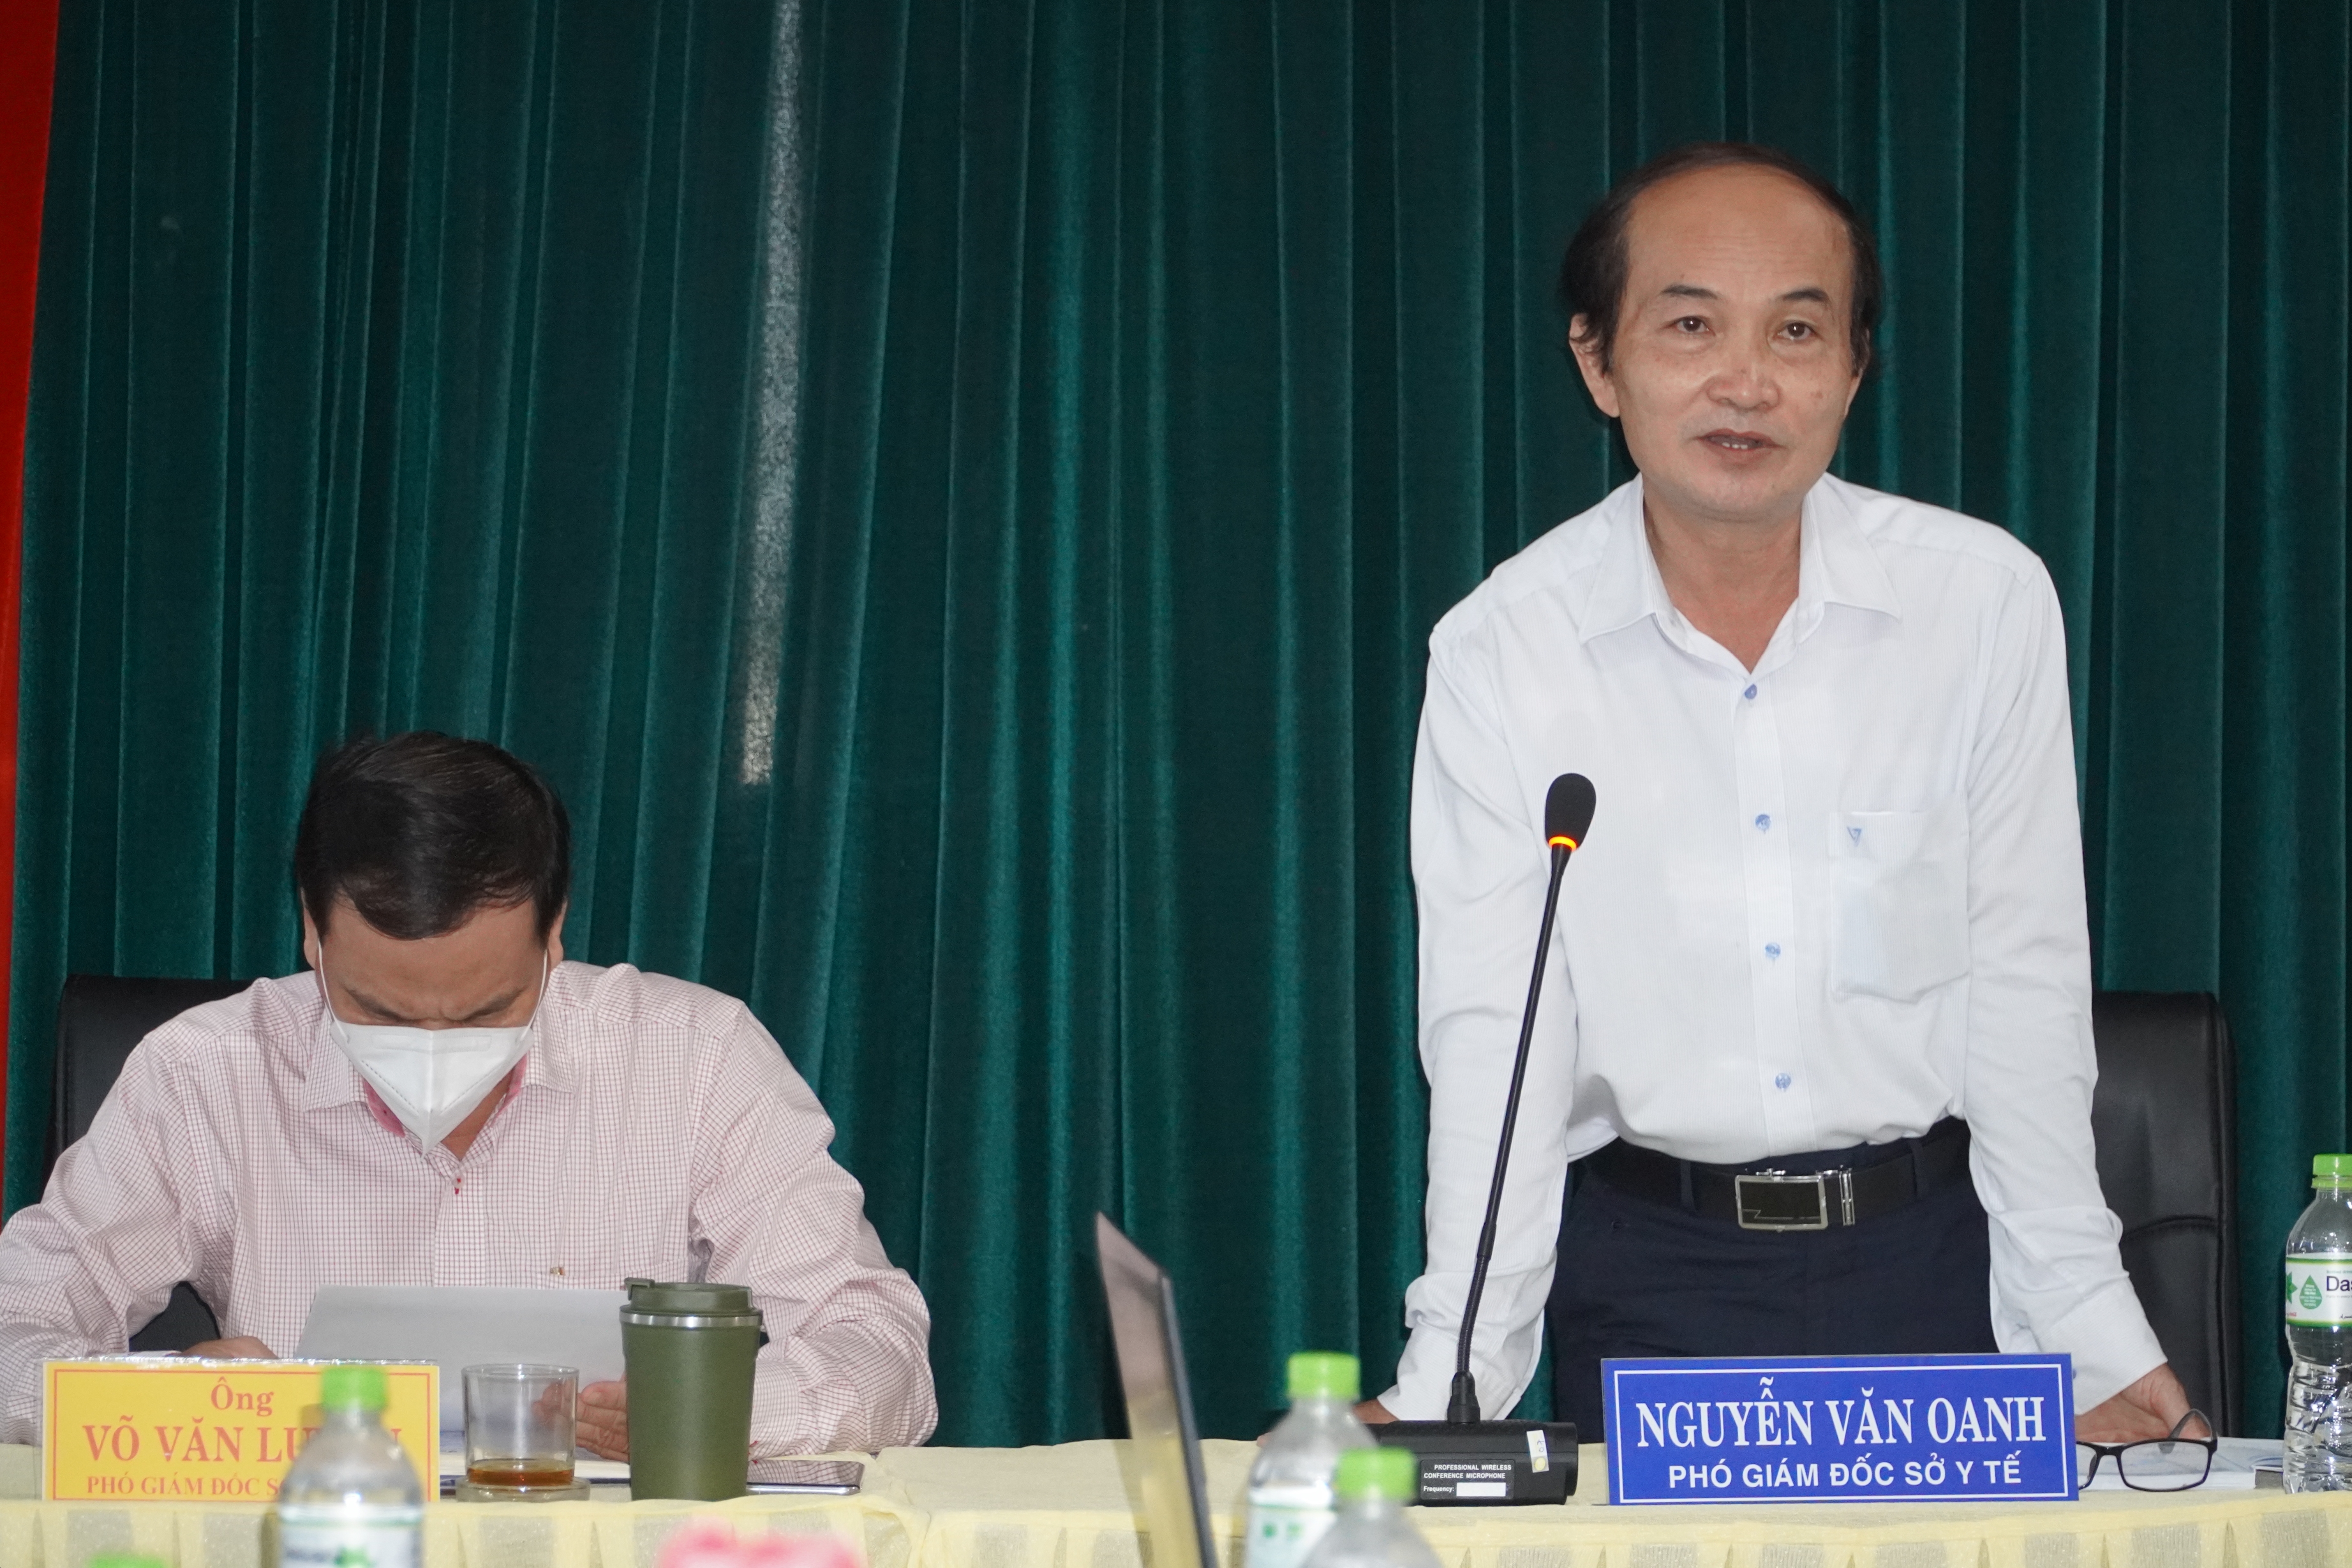 Phó giám đốc Sở Y tế Nguyễn Văn Oanh lưu ý nội dung trong tiêm chủng